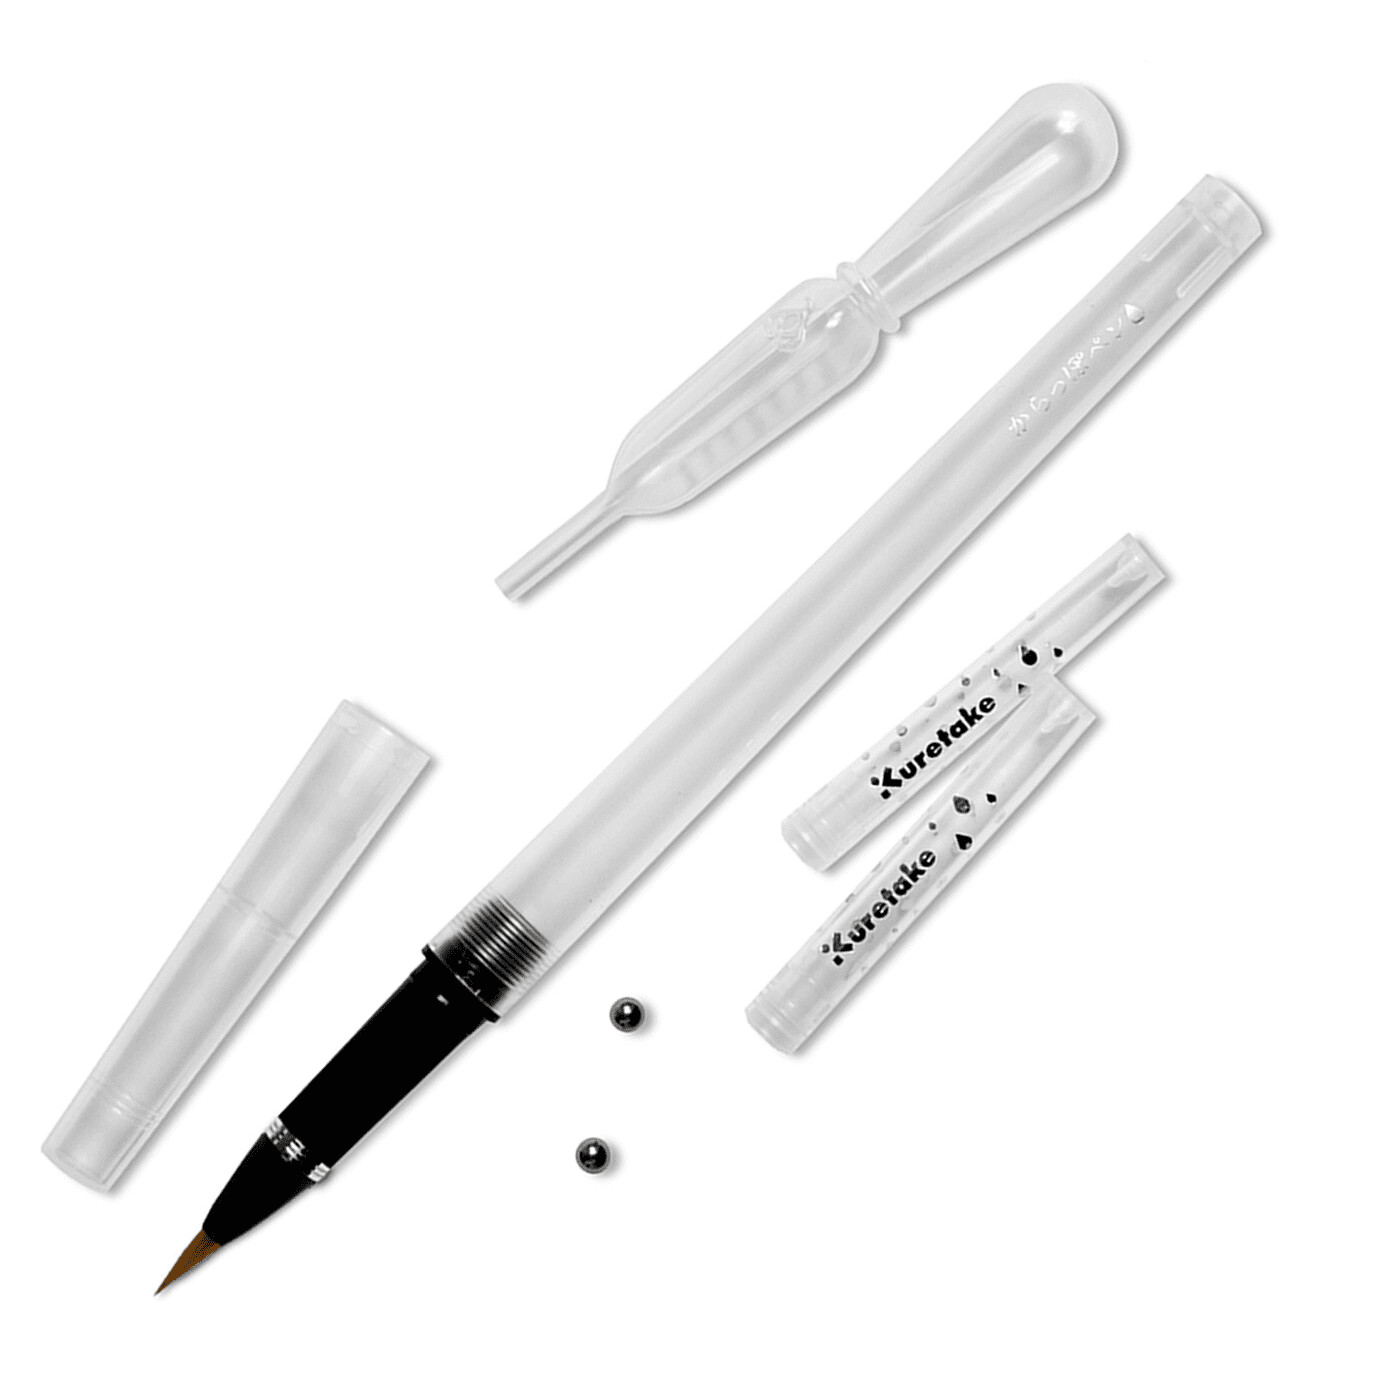 Kuretake Karappo Brush Pen and Cartridges